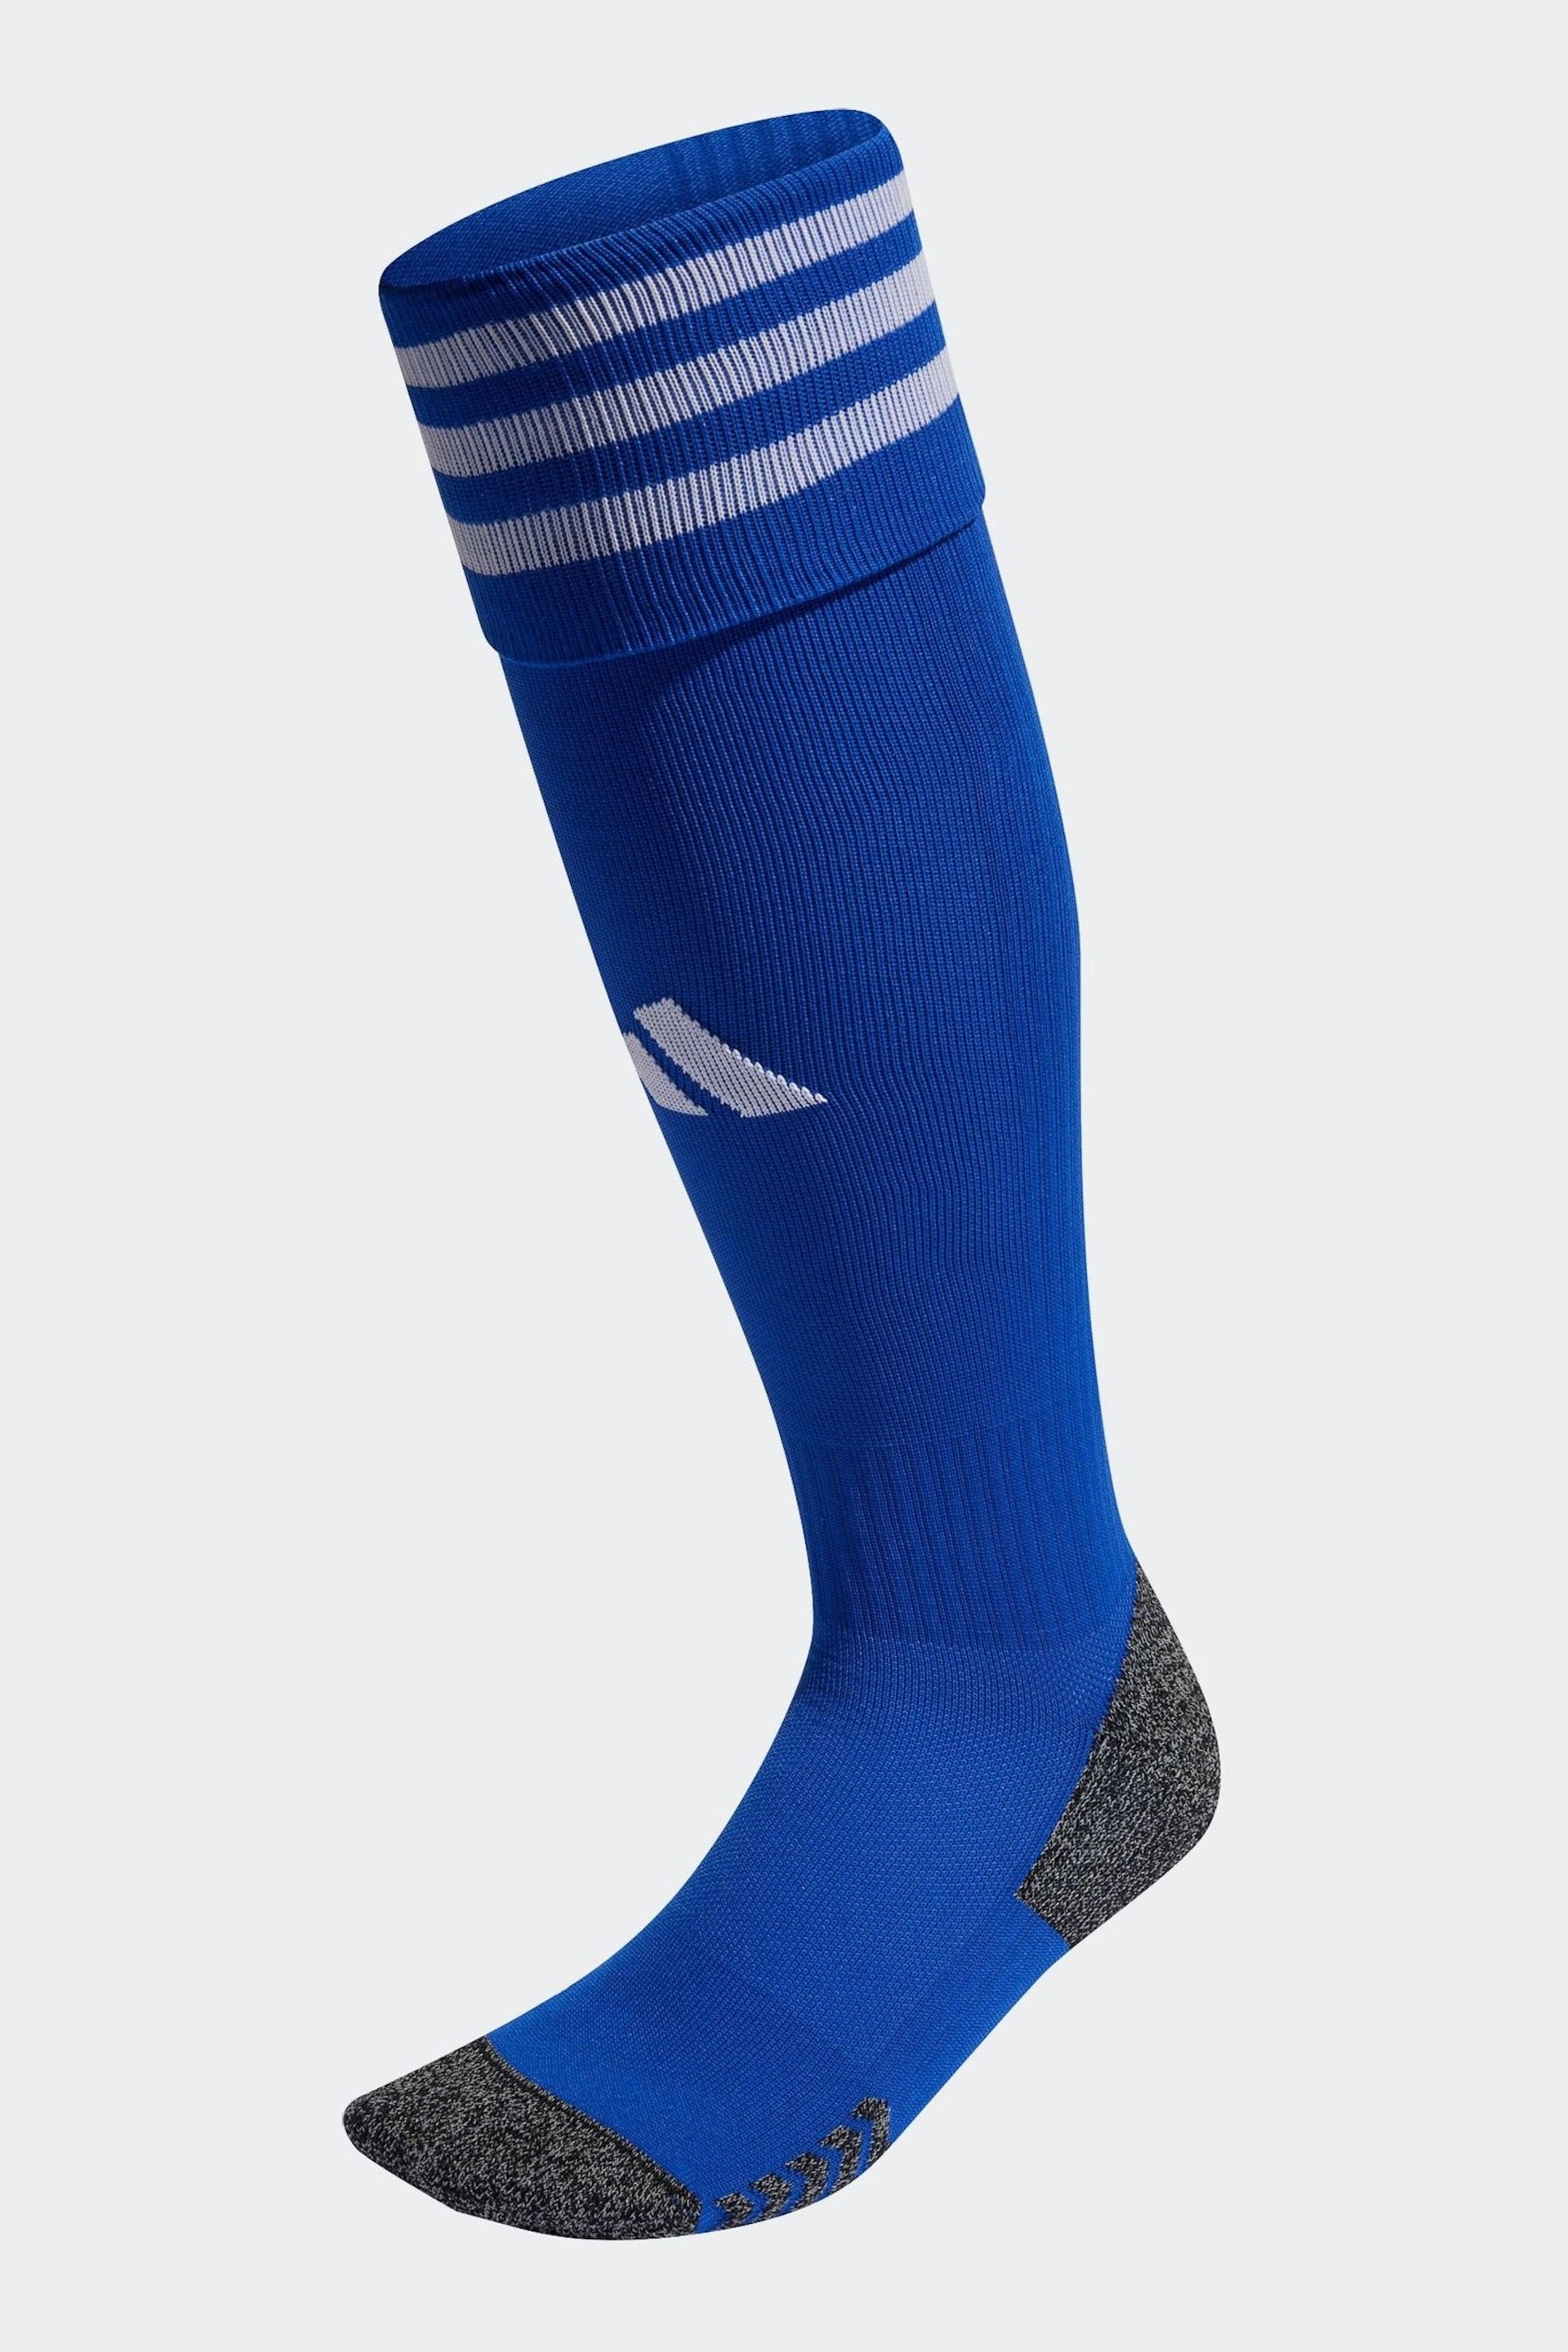 adidas Blue Performance Adi 23 Socks - Image 1 of 3